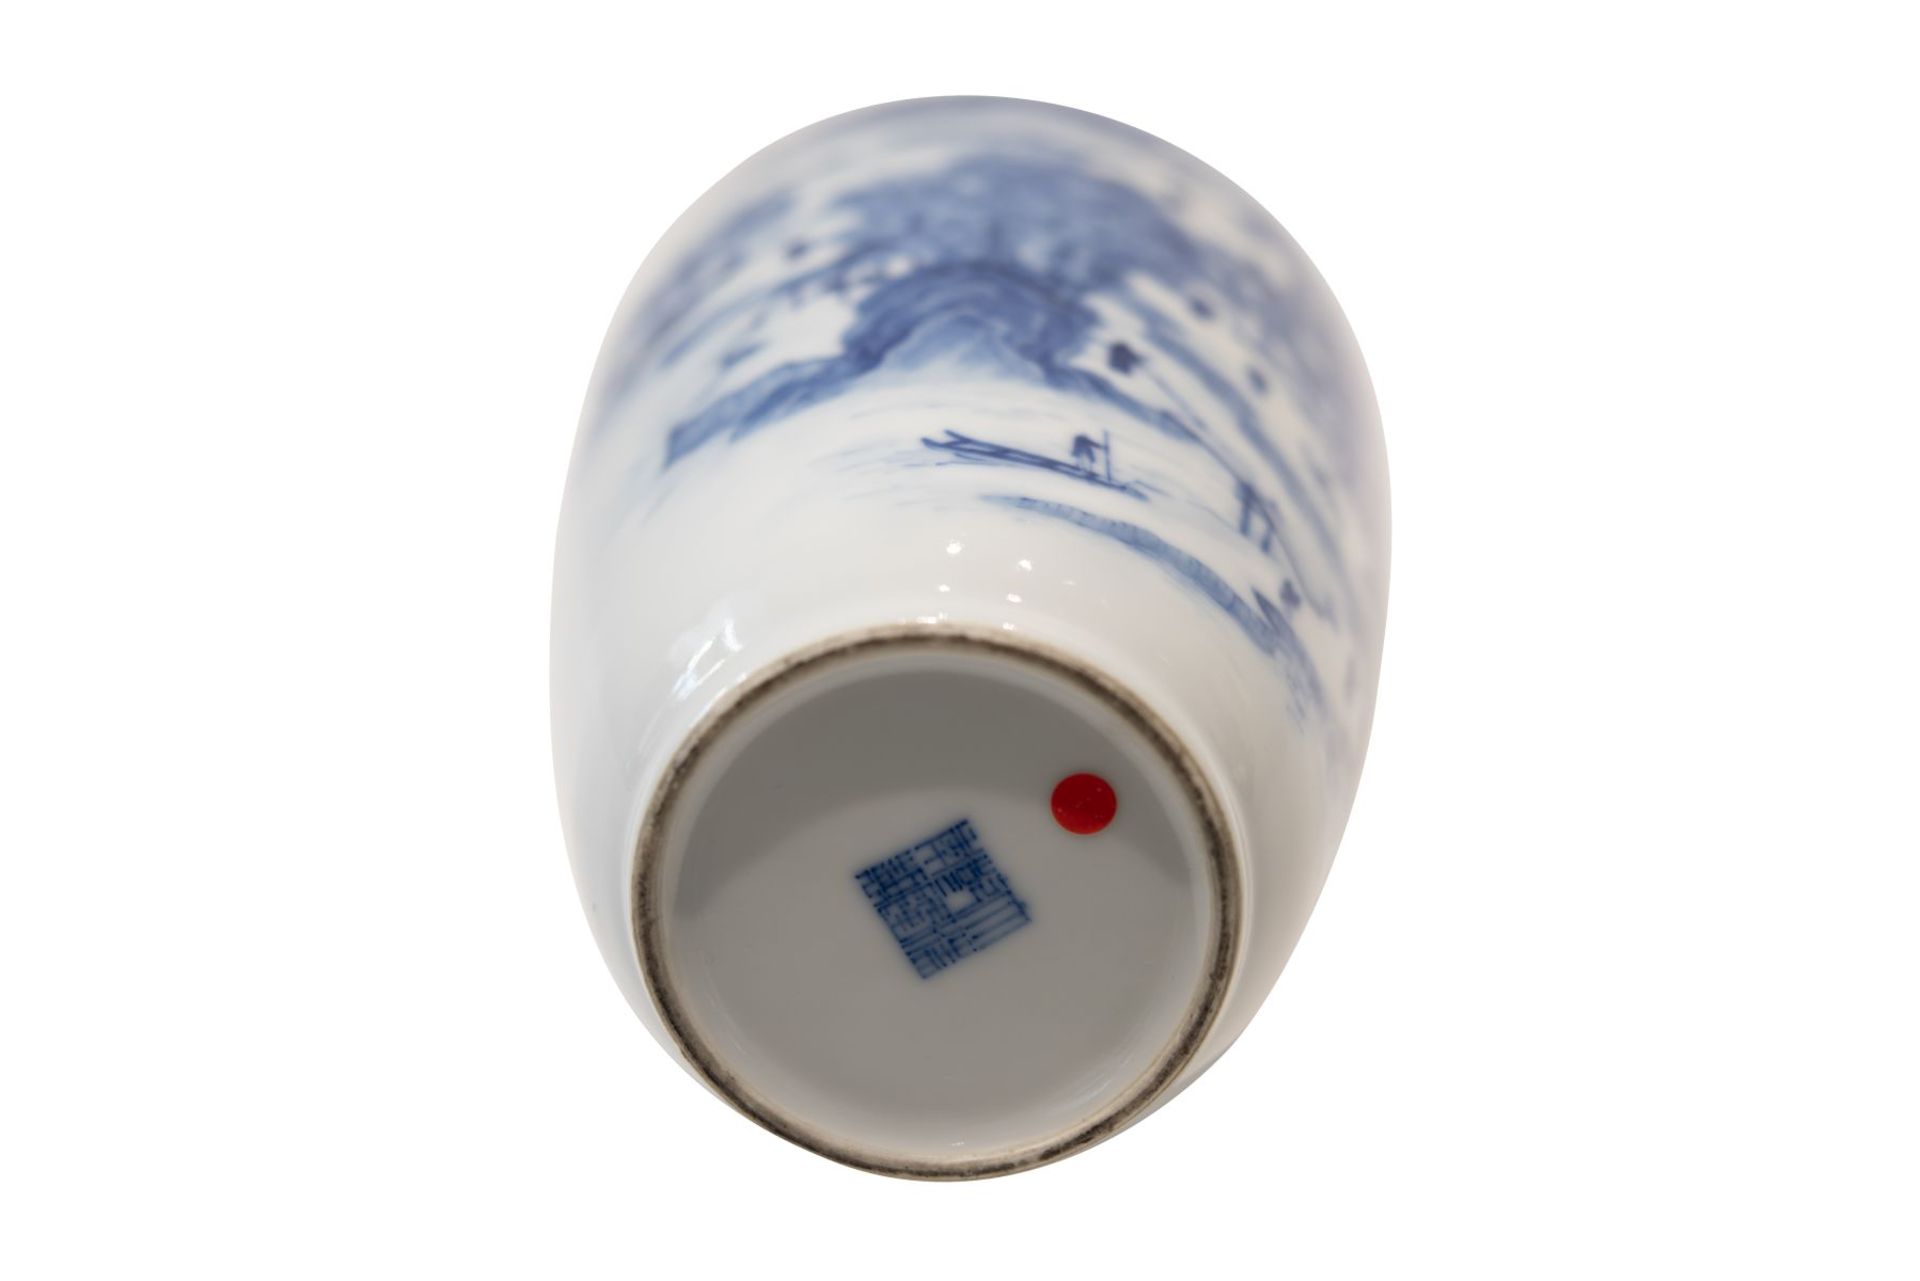 Blau-weise VaseBlau-weise Vase mit unterglasurblaue Vierzeichen Marke. Porzellan, auf der Wandung - Image 5 of 5